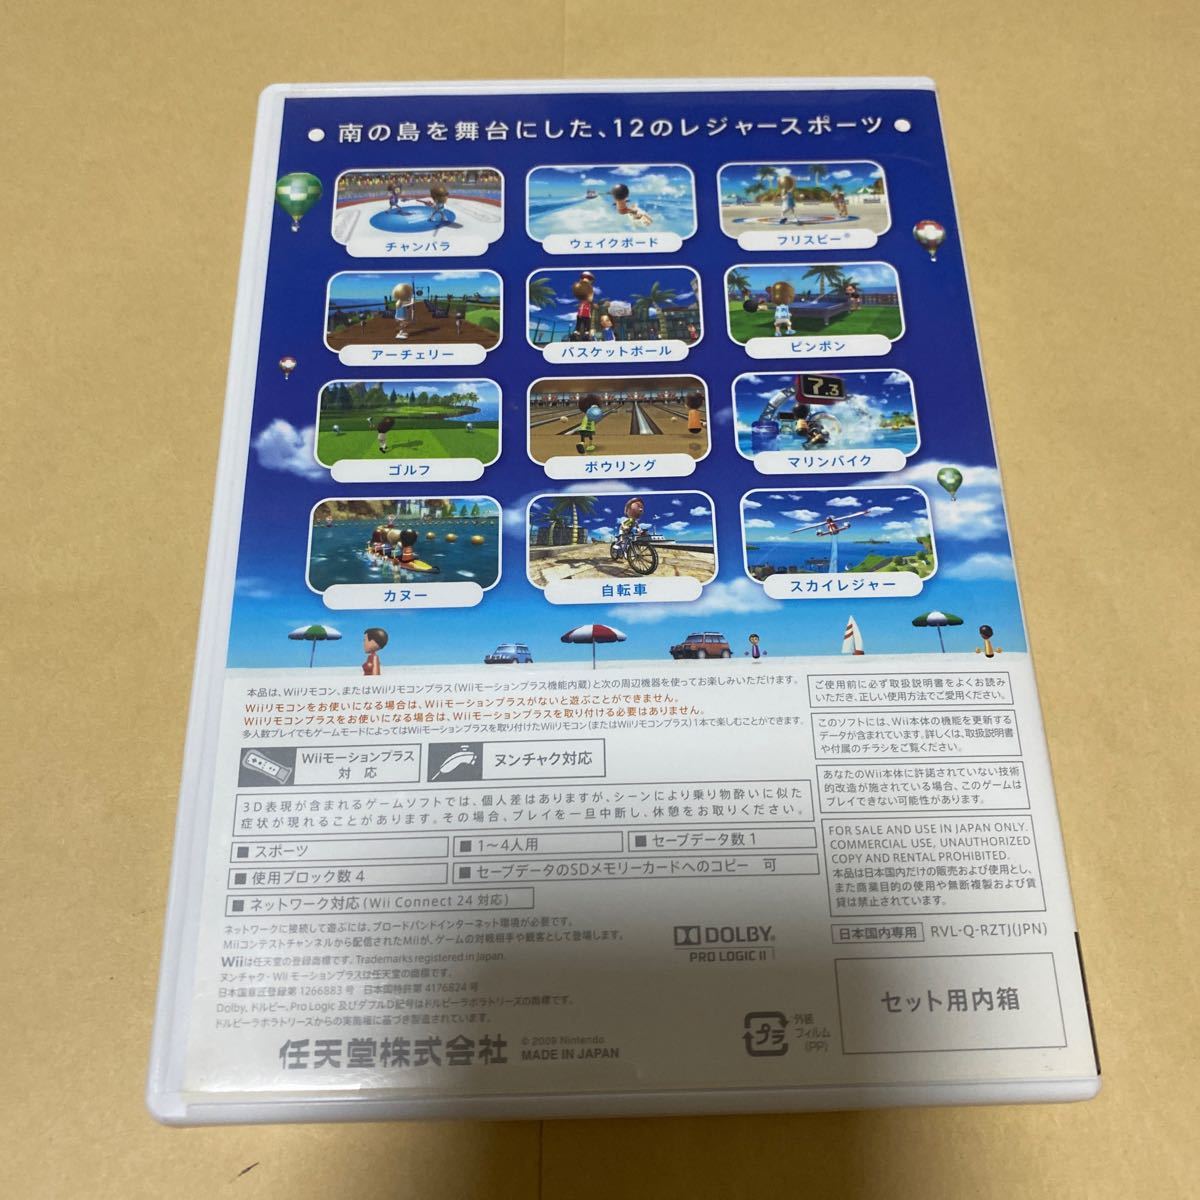 Wiiスポーツと Wiiスポーツリゾート